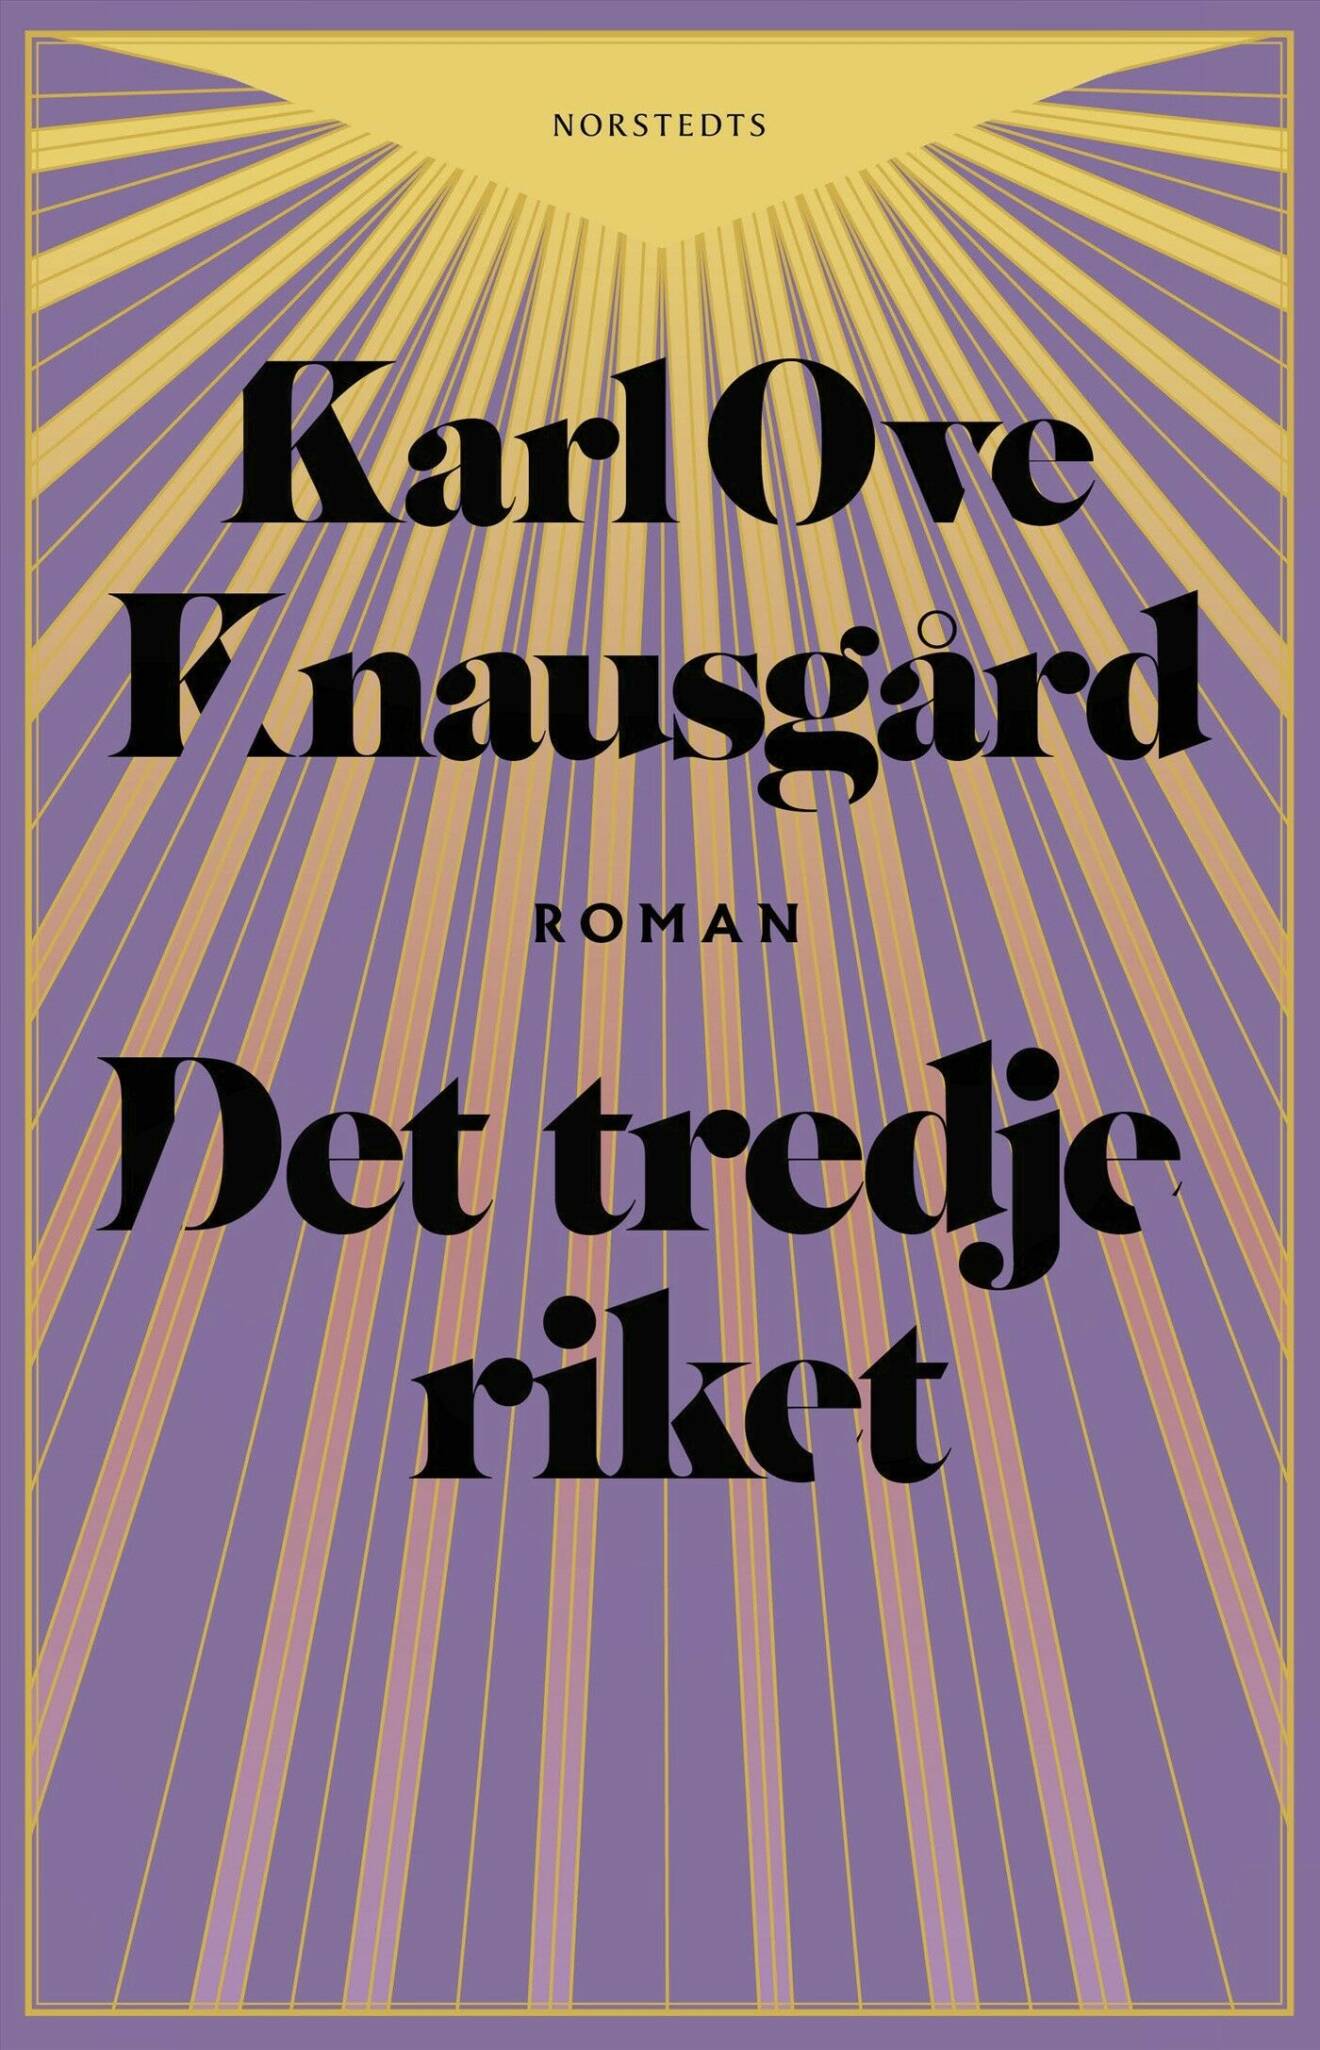 Det tredje riket av Karl Ove Knausgård.